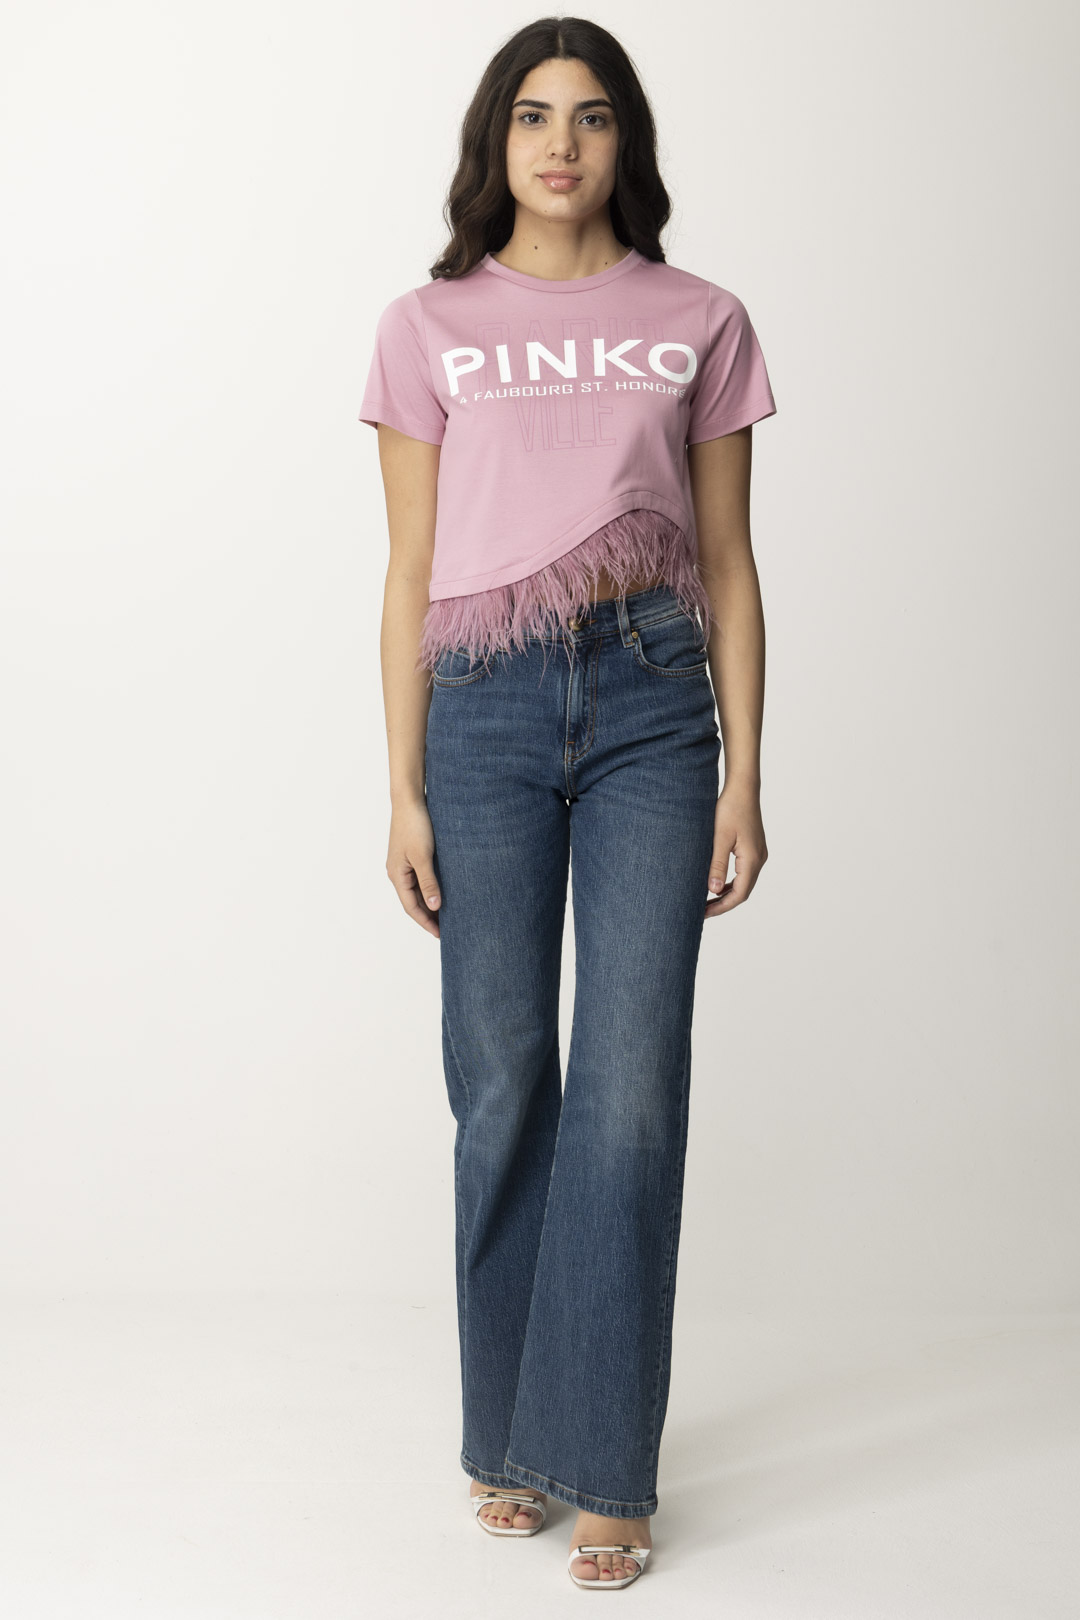 Anteprima: Pinko Wanda jeans LAVAGGIO MEDIO CHIARO